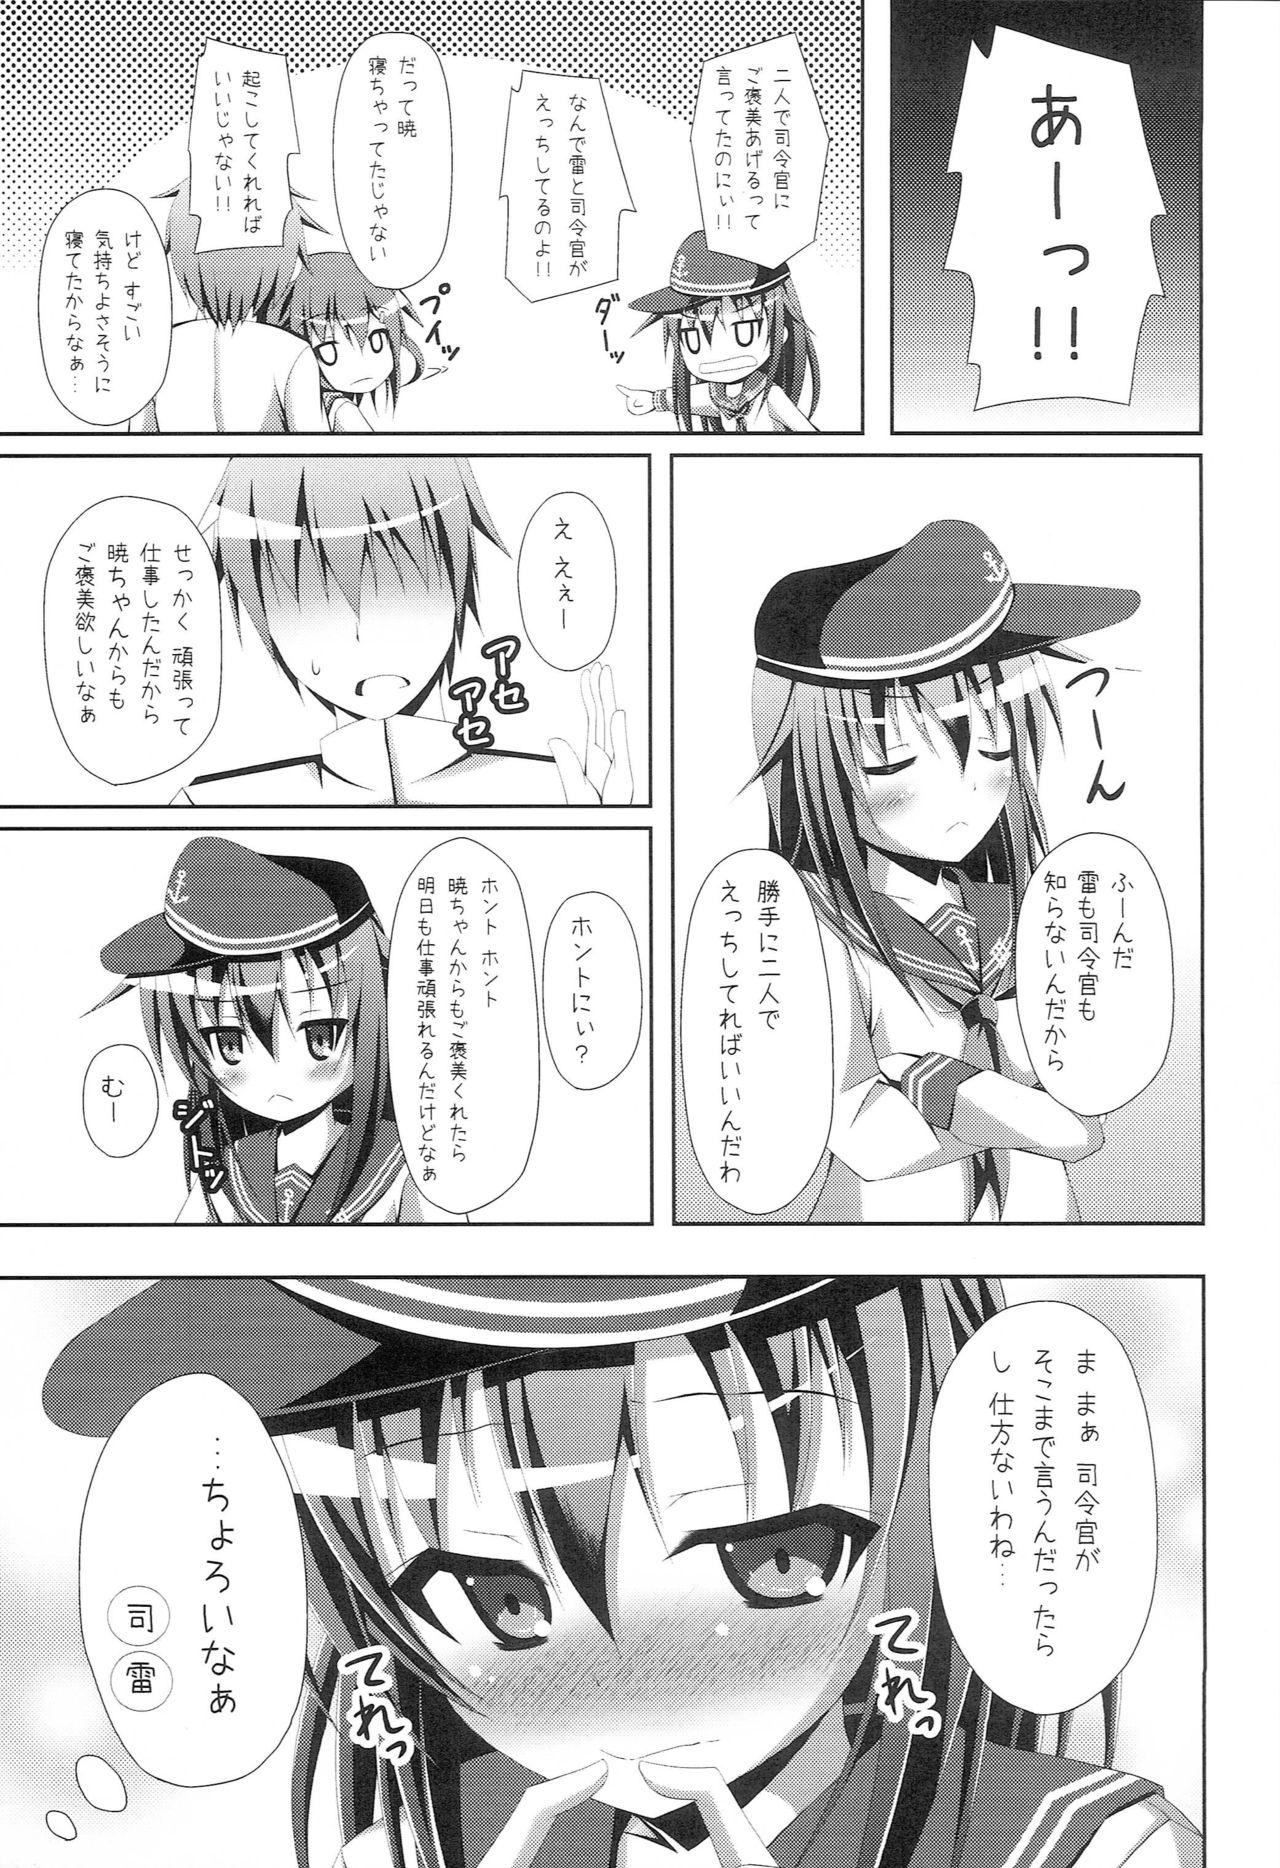 Topless "Shire-kan Ecchi Shiyo?" "Shireikan to Nara Watashi mo..." - Kantai collection Titfuck - Page 12